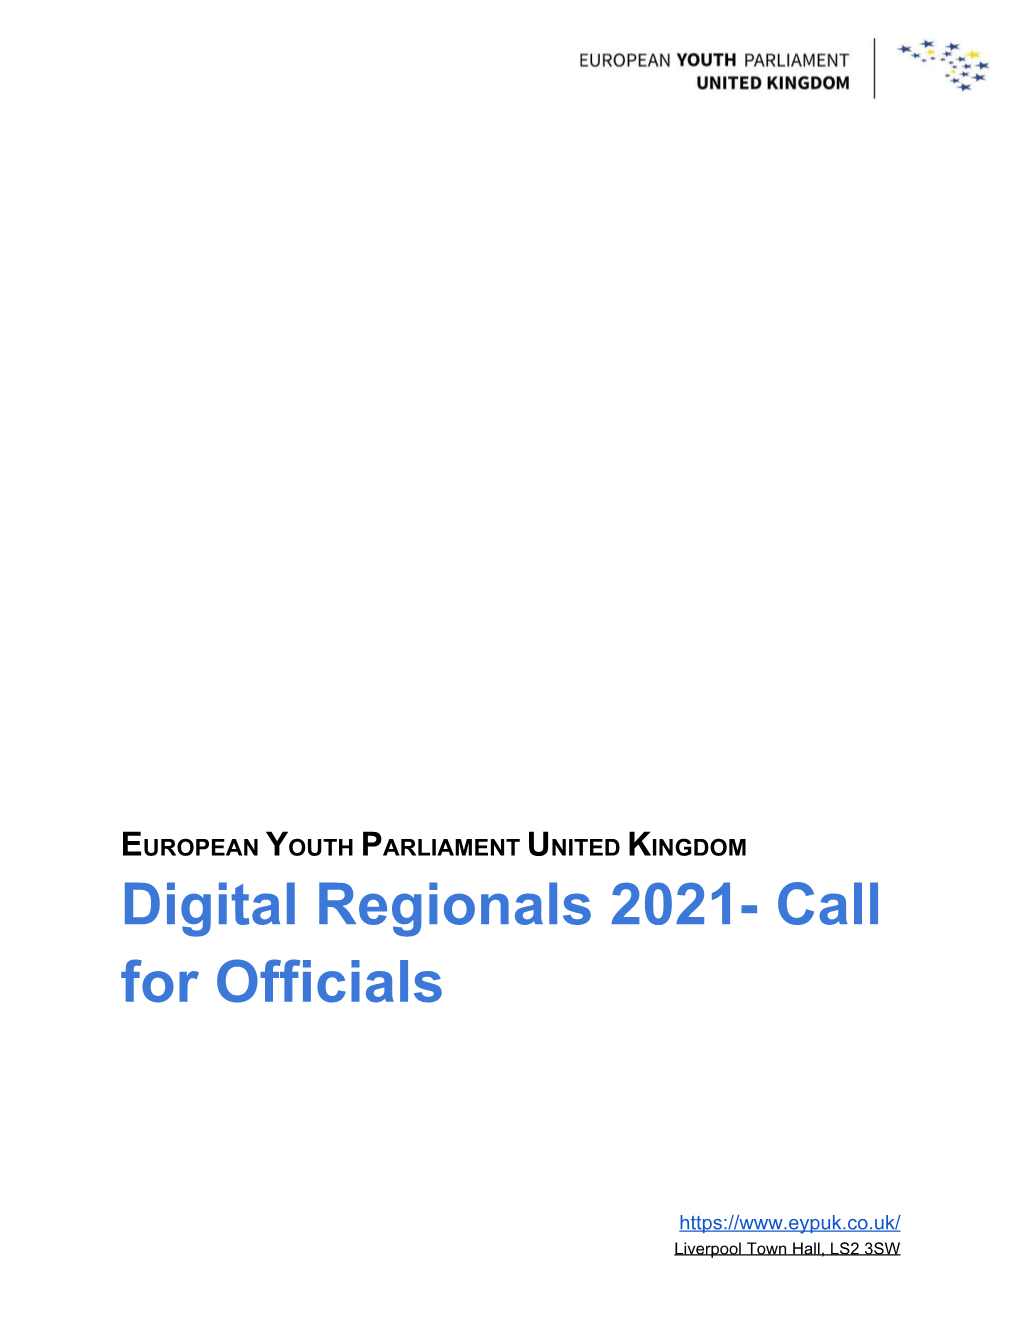 Digital Regionals 2021- Call for Officials